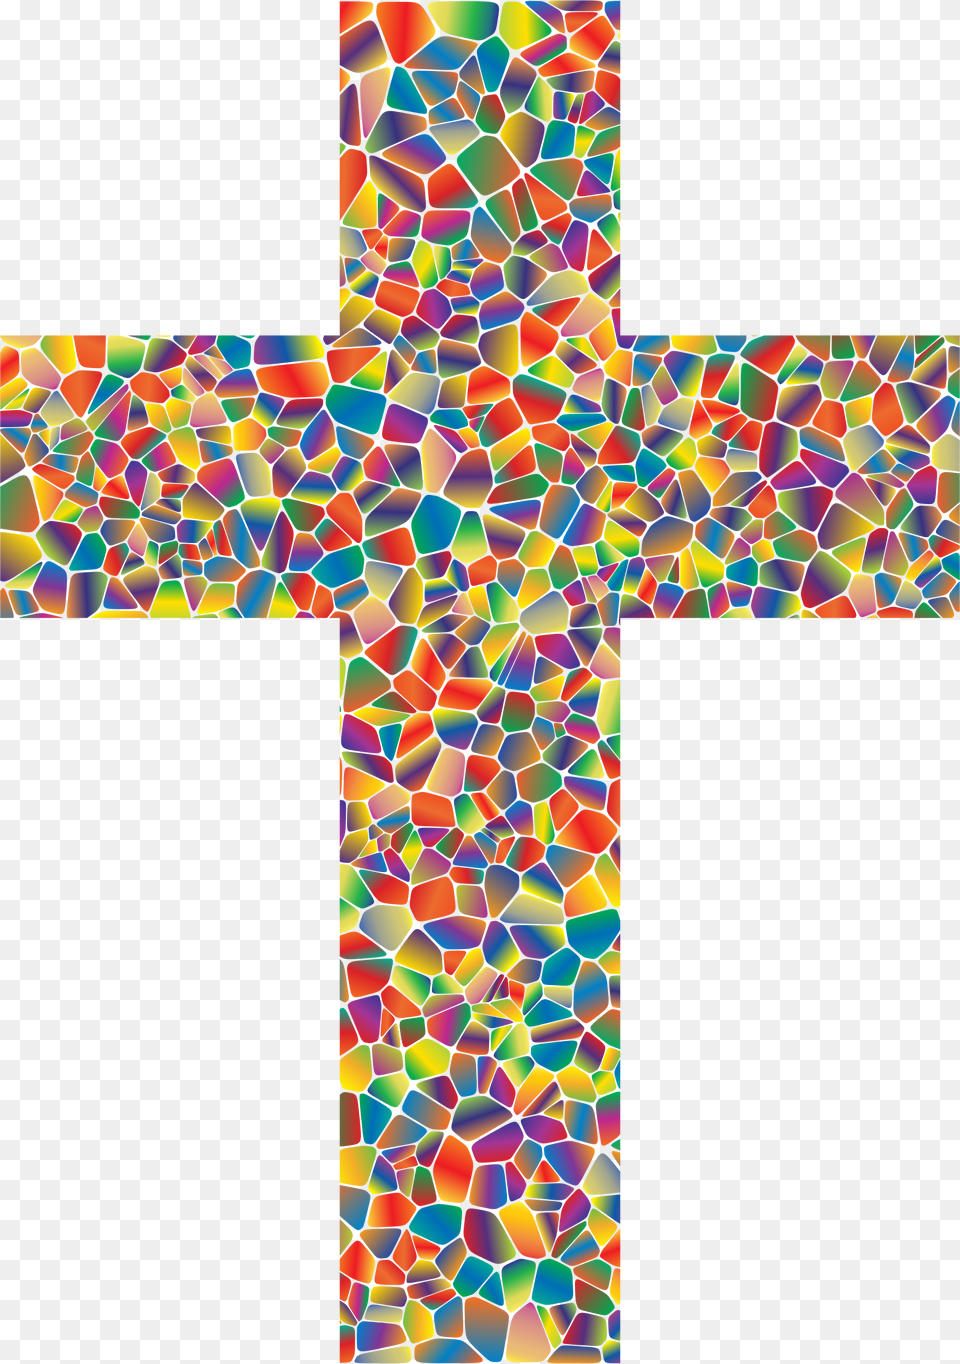 Big Colorful Cross, Symbol, Art Png Image